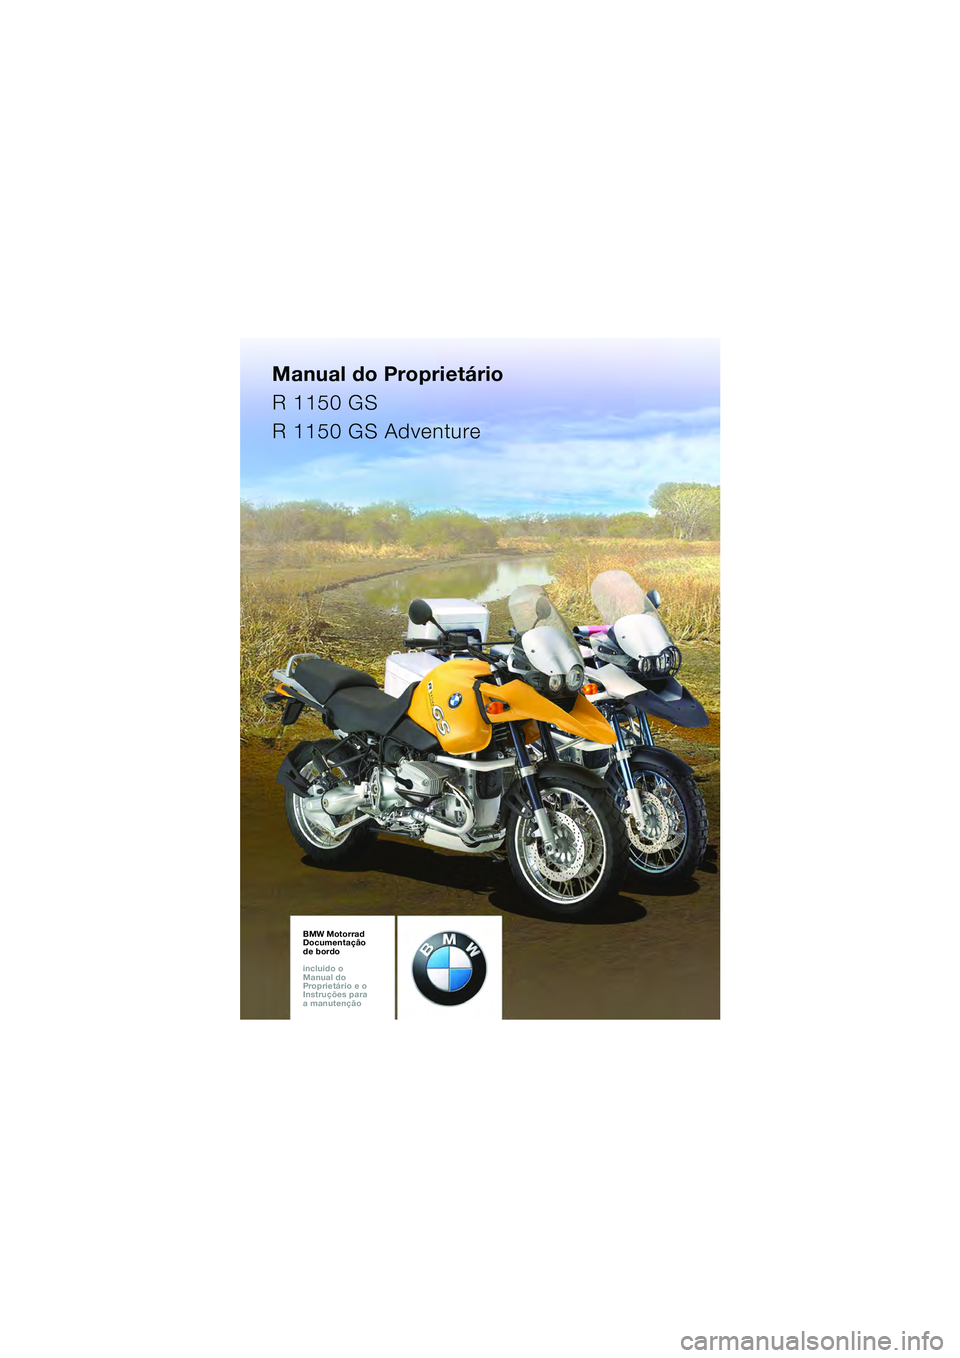 BMW MOTORRAD R 1150 GS 2002  Manual do condutor (in Portuguese) Manual do Proprietário
R 1150 GS
R 1150 GS Adventure
BMW Motorrad
Documentação 
de bordo
incluido o  
Manual do  
Proprietário e o  
Instruções para  
a manutençãoBMW Motorrad
Documentação 
